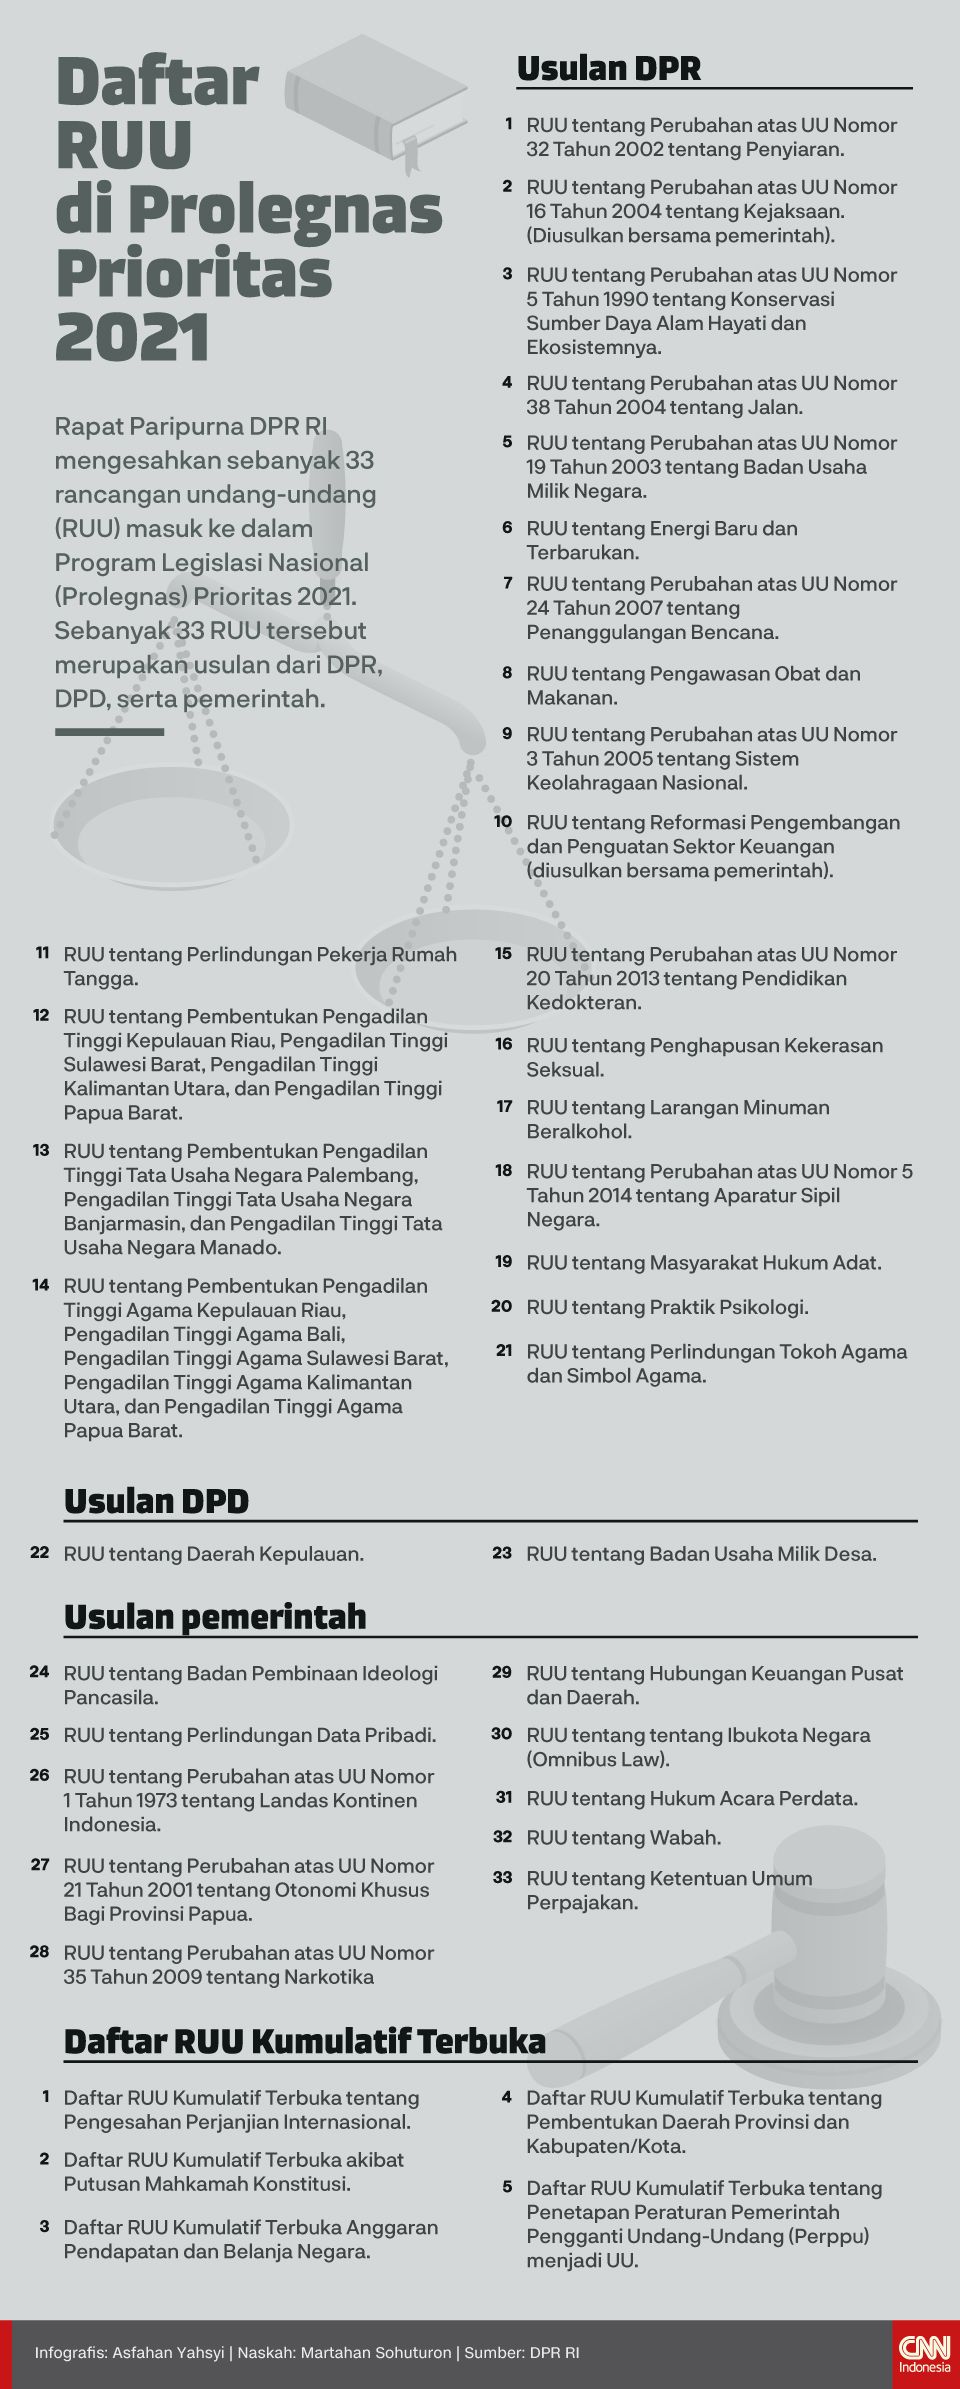 Infografis Daftar RUU di Prolegnas Prioritas 2021 new